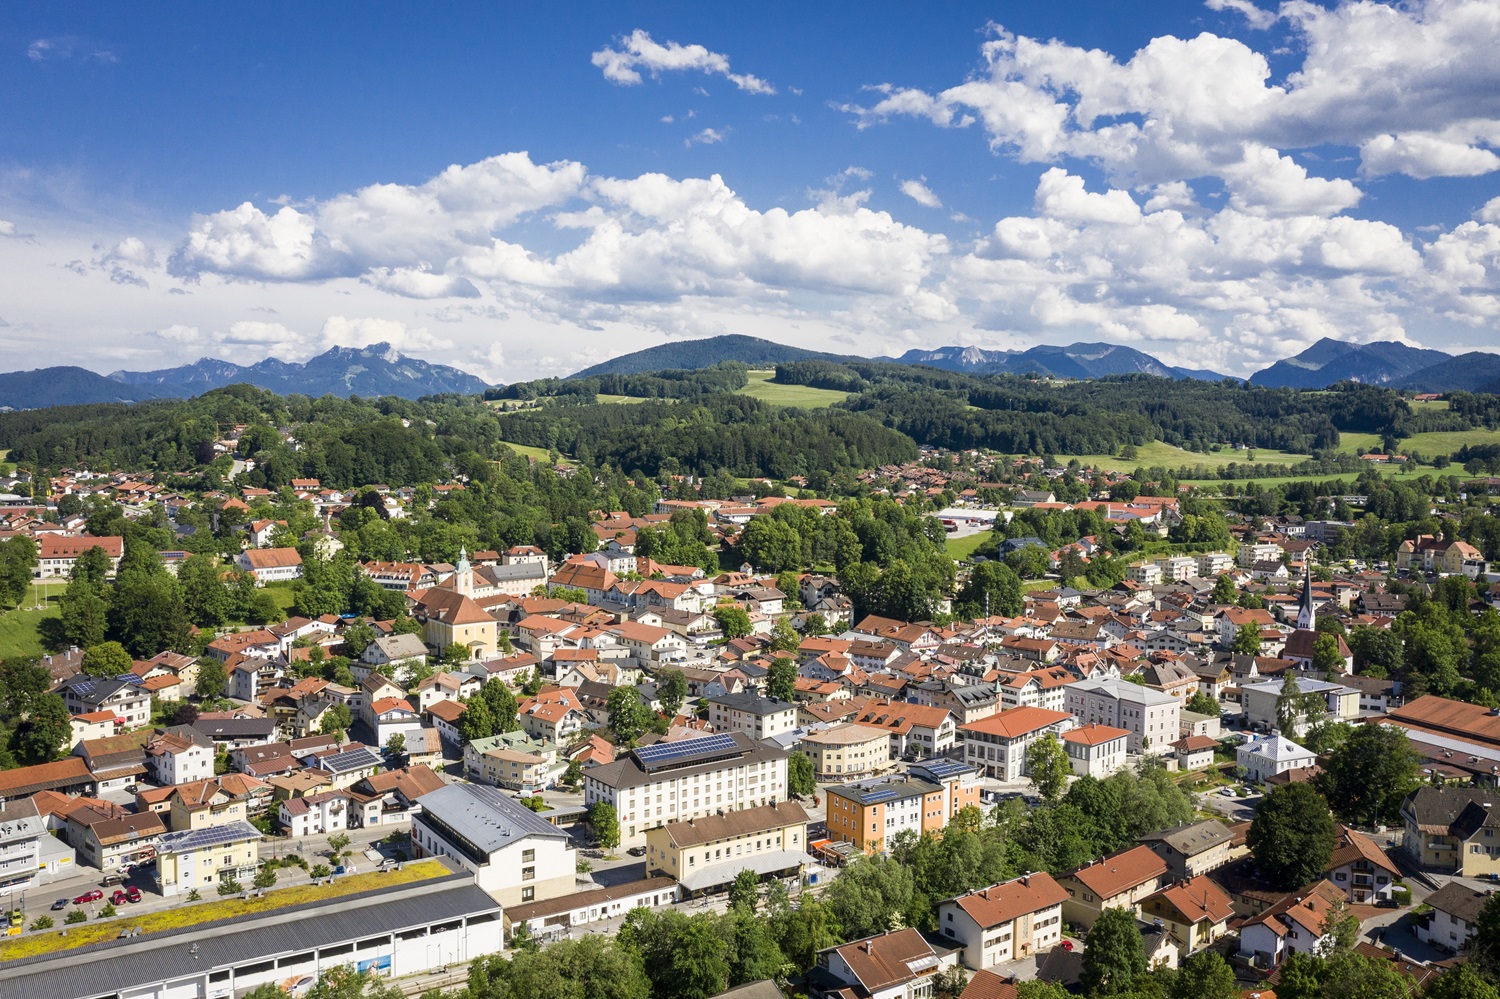 Unternehmensbefragung zu Gewerbeflächen im Landkreis Miesbach